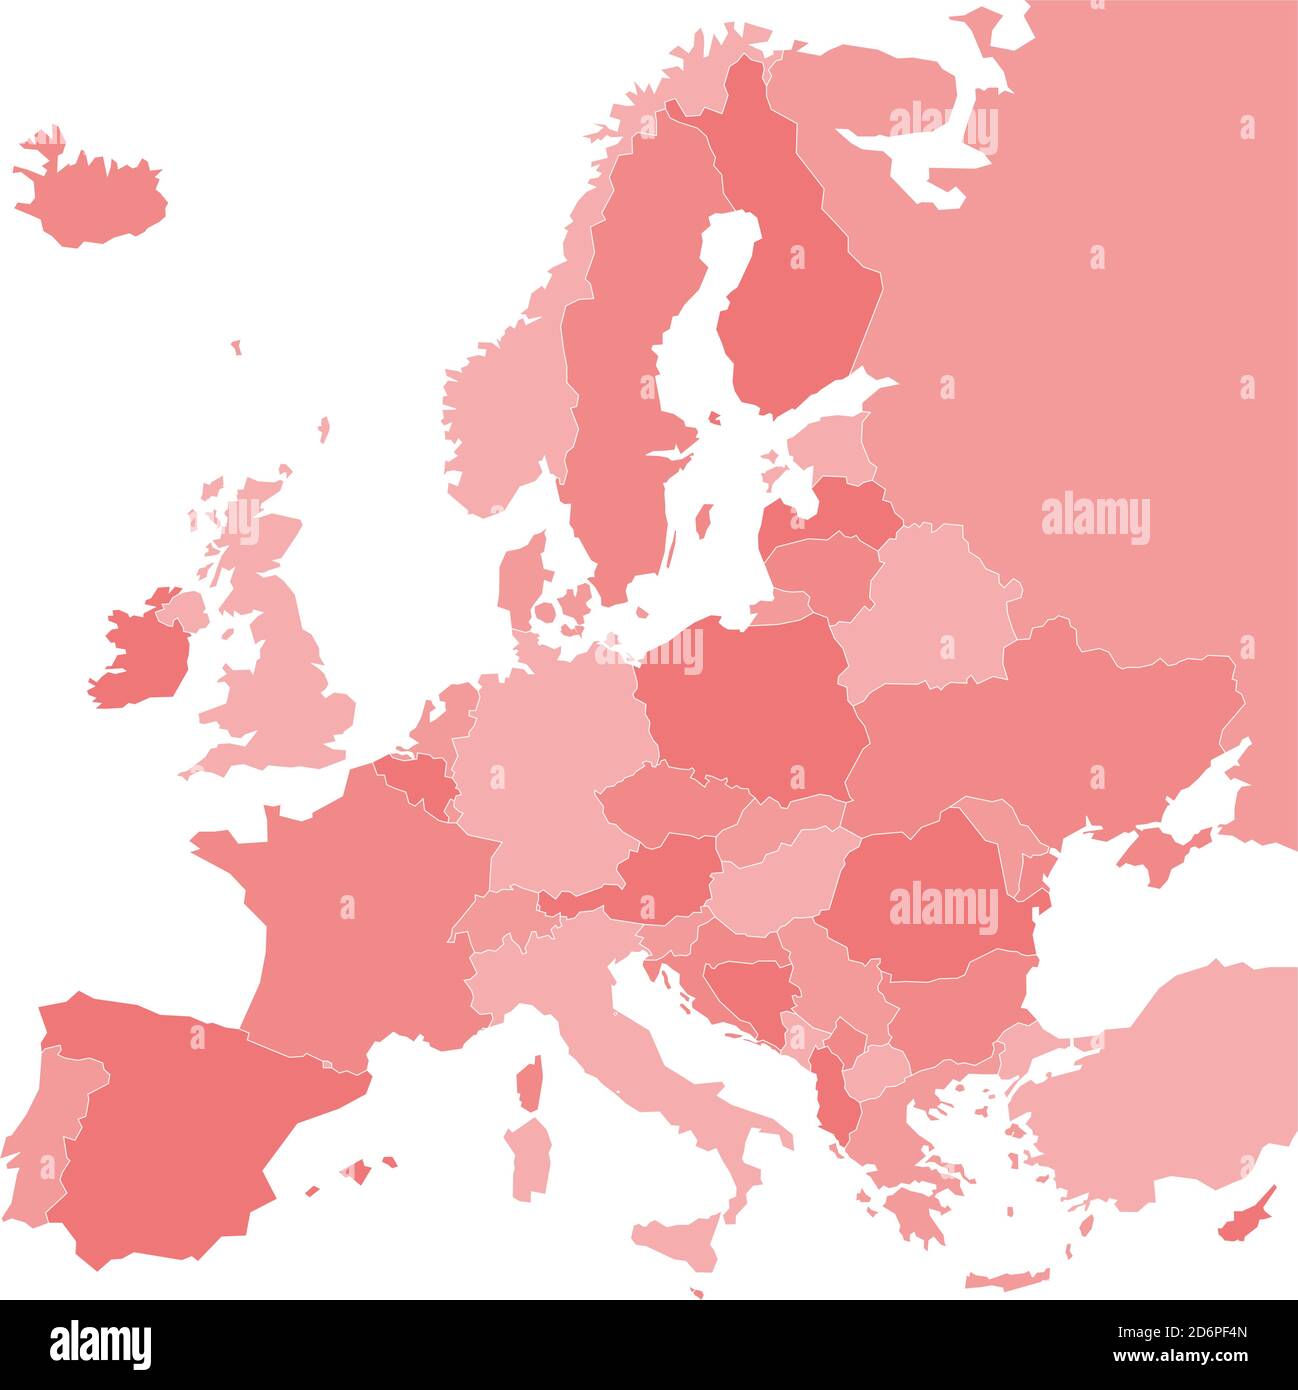 Mappa vuota dell'Europa. Illustrazione vettoriale in tonalità rosse su sfondo bianco. Illustrazione Vettoriale